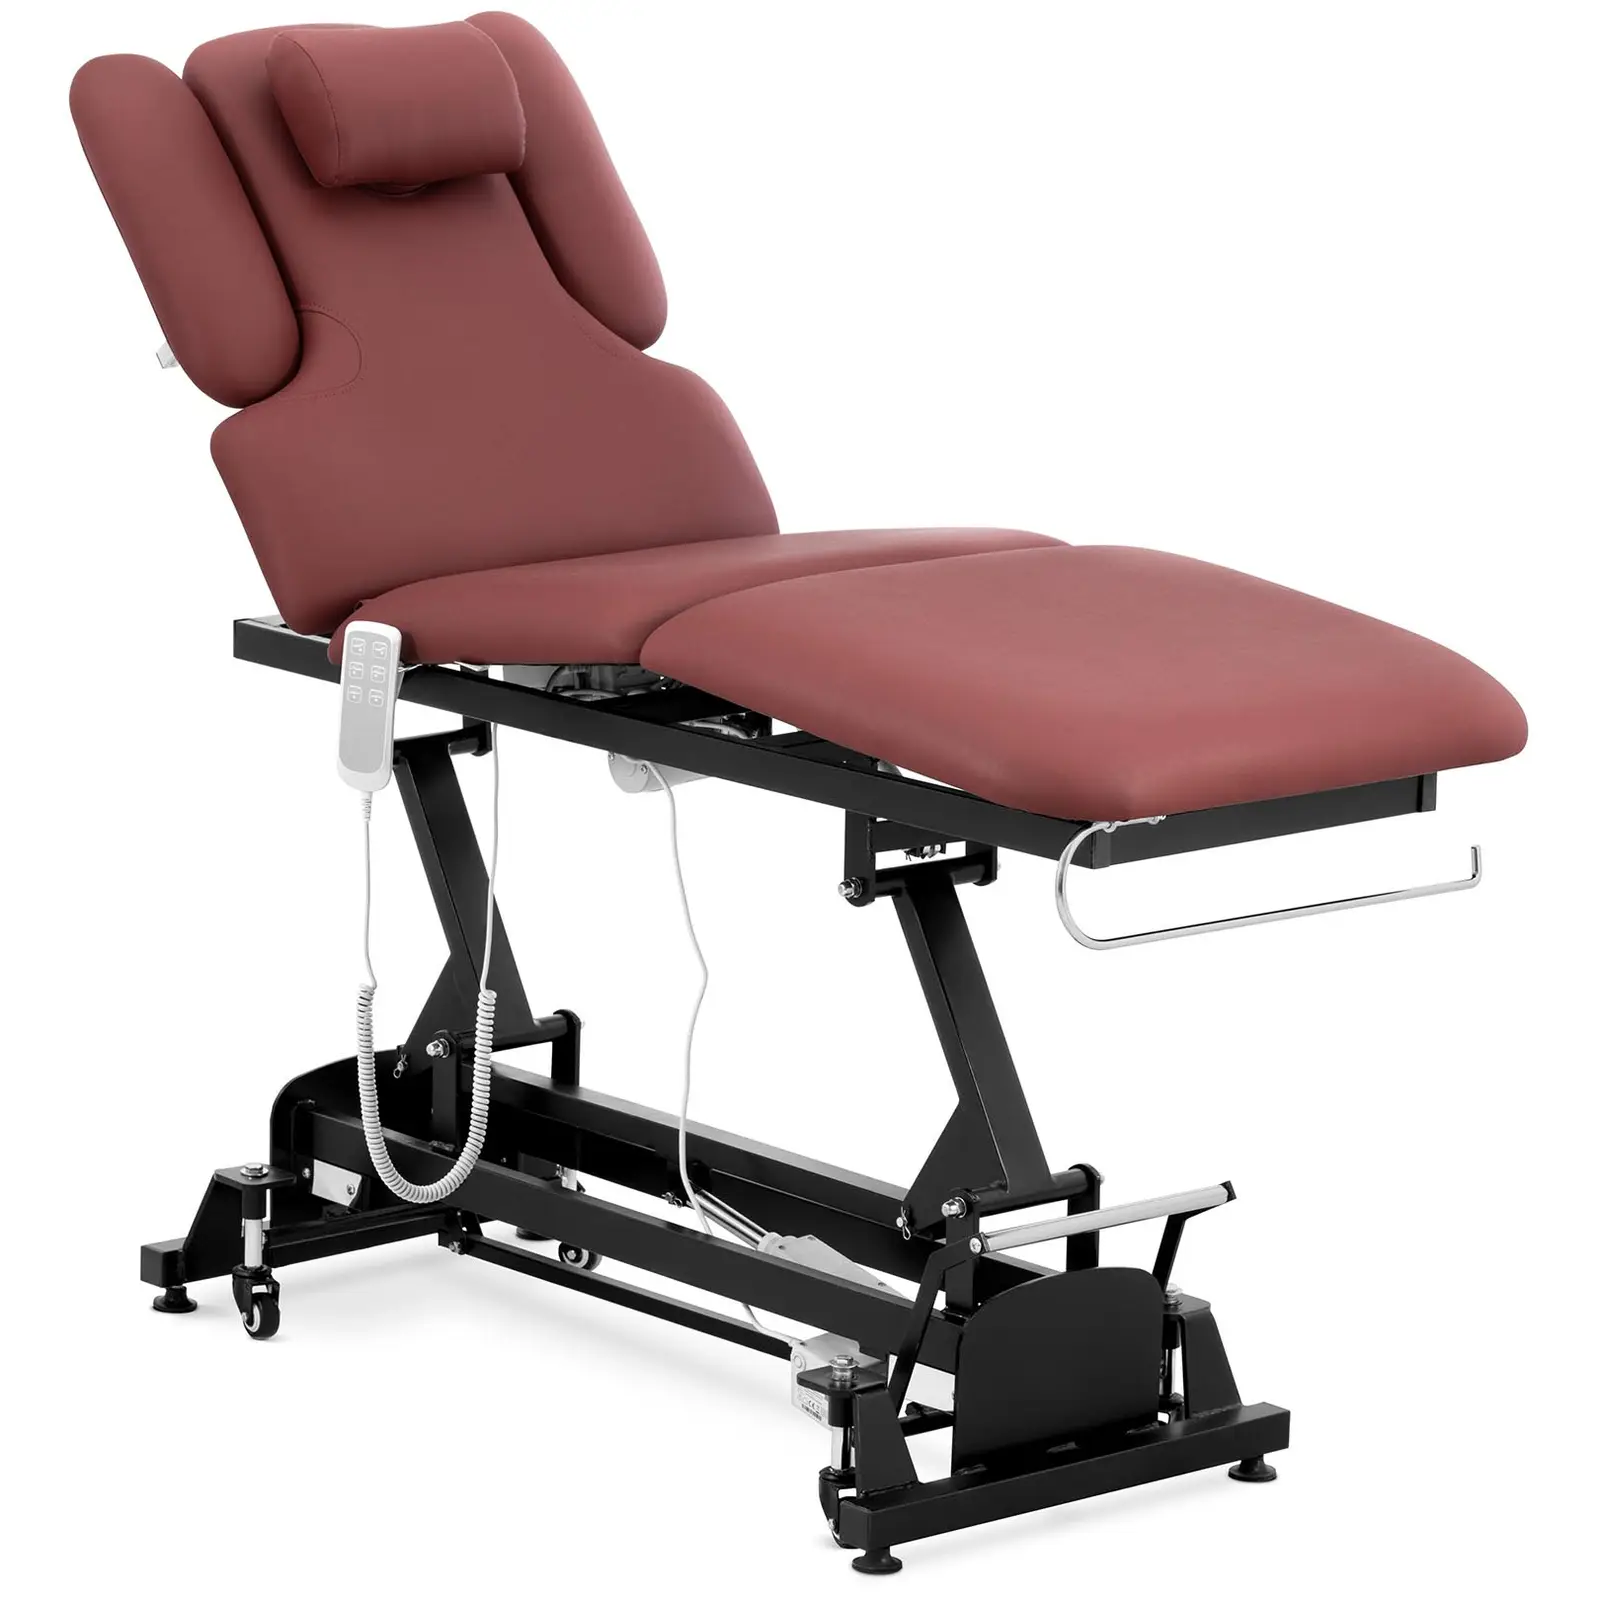 Table de massage électrique - 3 moteurs - 250 kg - Noir, Rouge vin